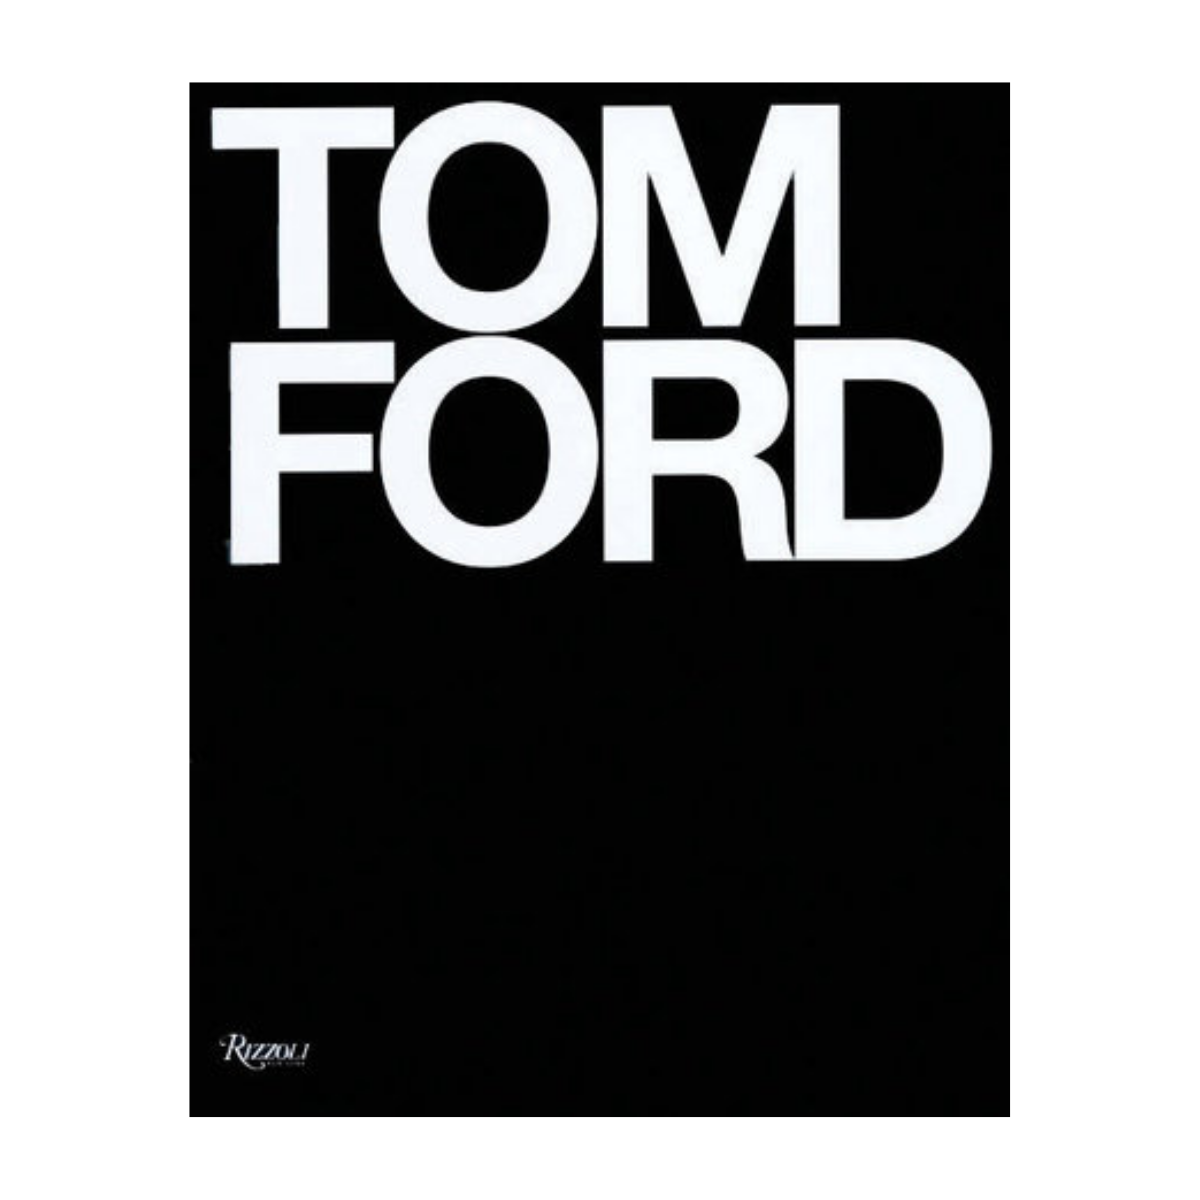 "Tom Ford"